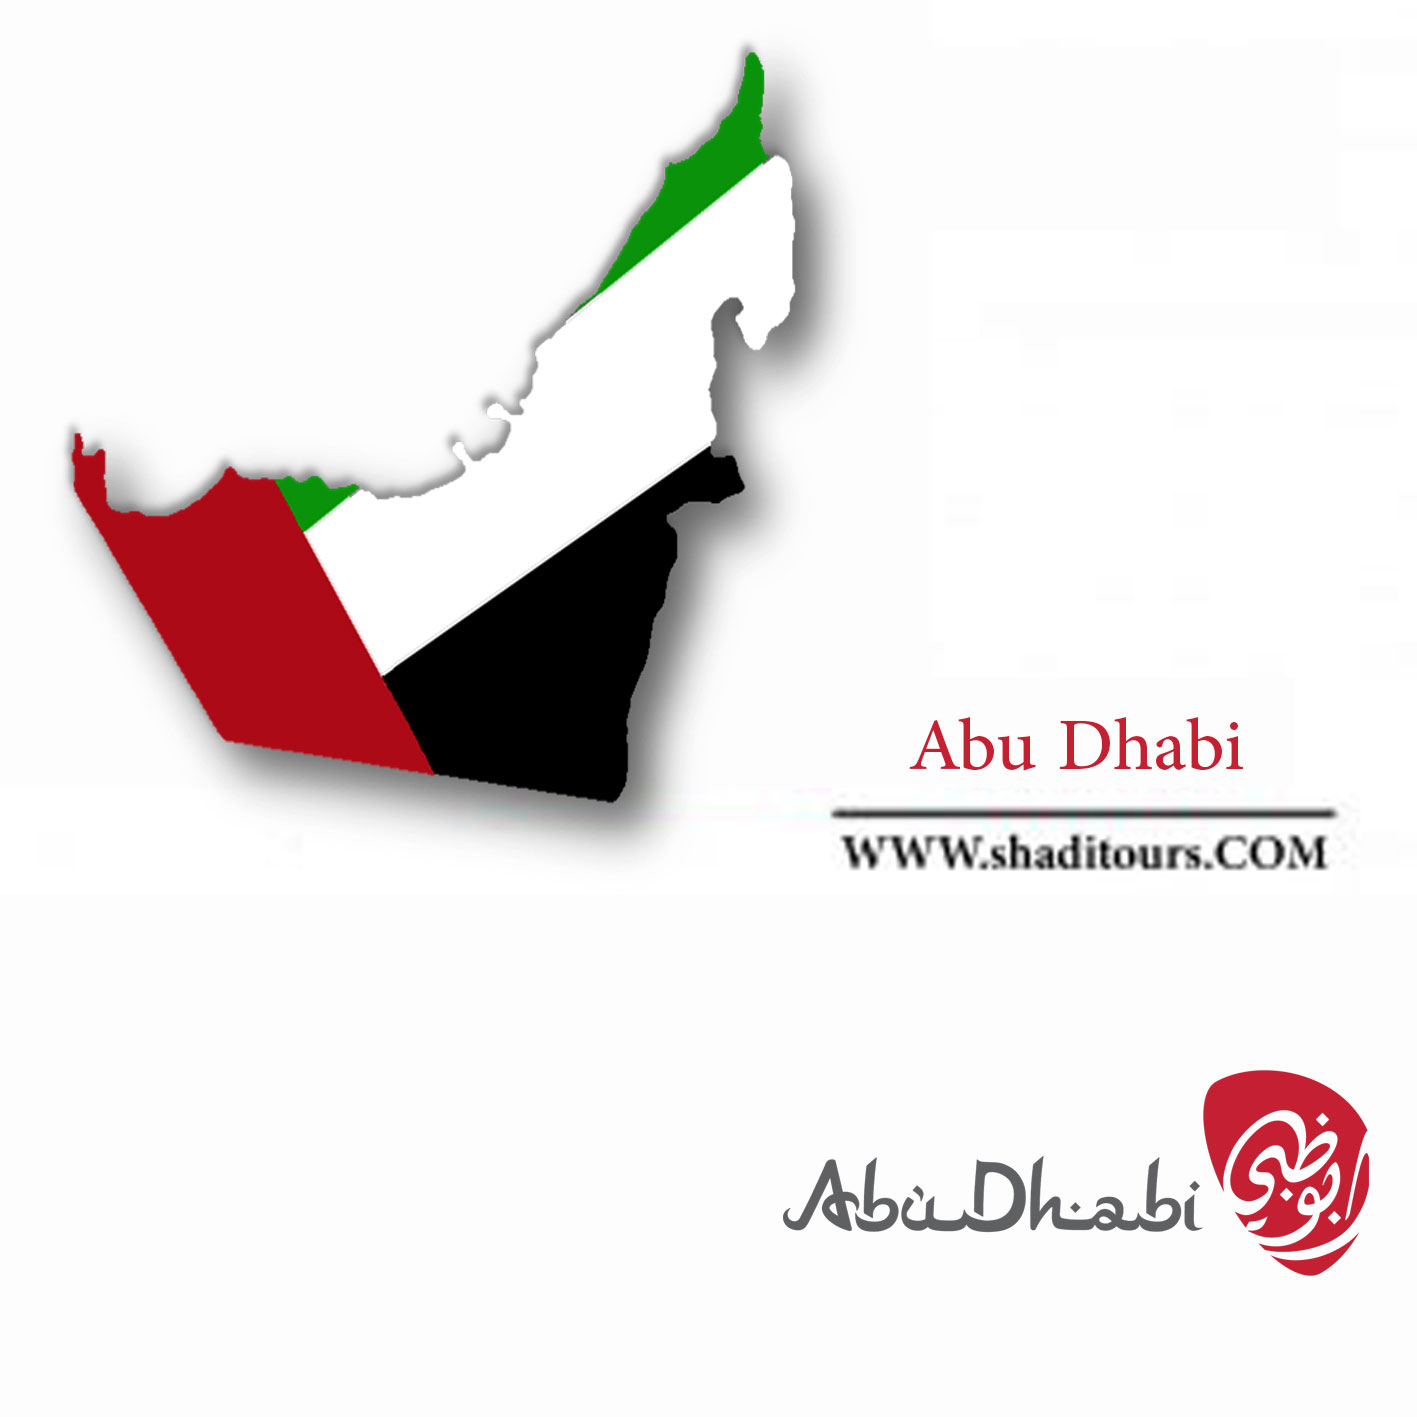 Abu-Dhabi-shaditours